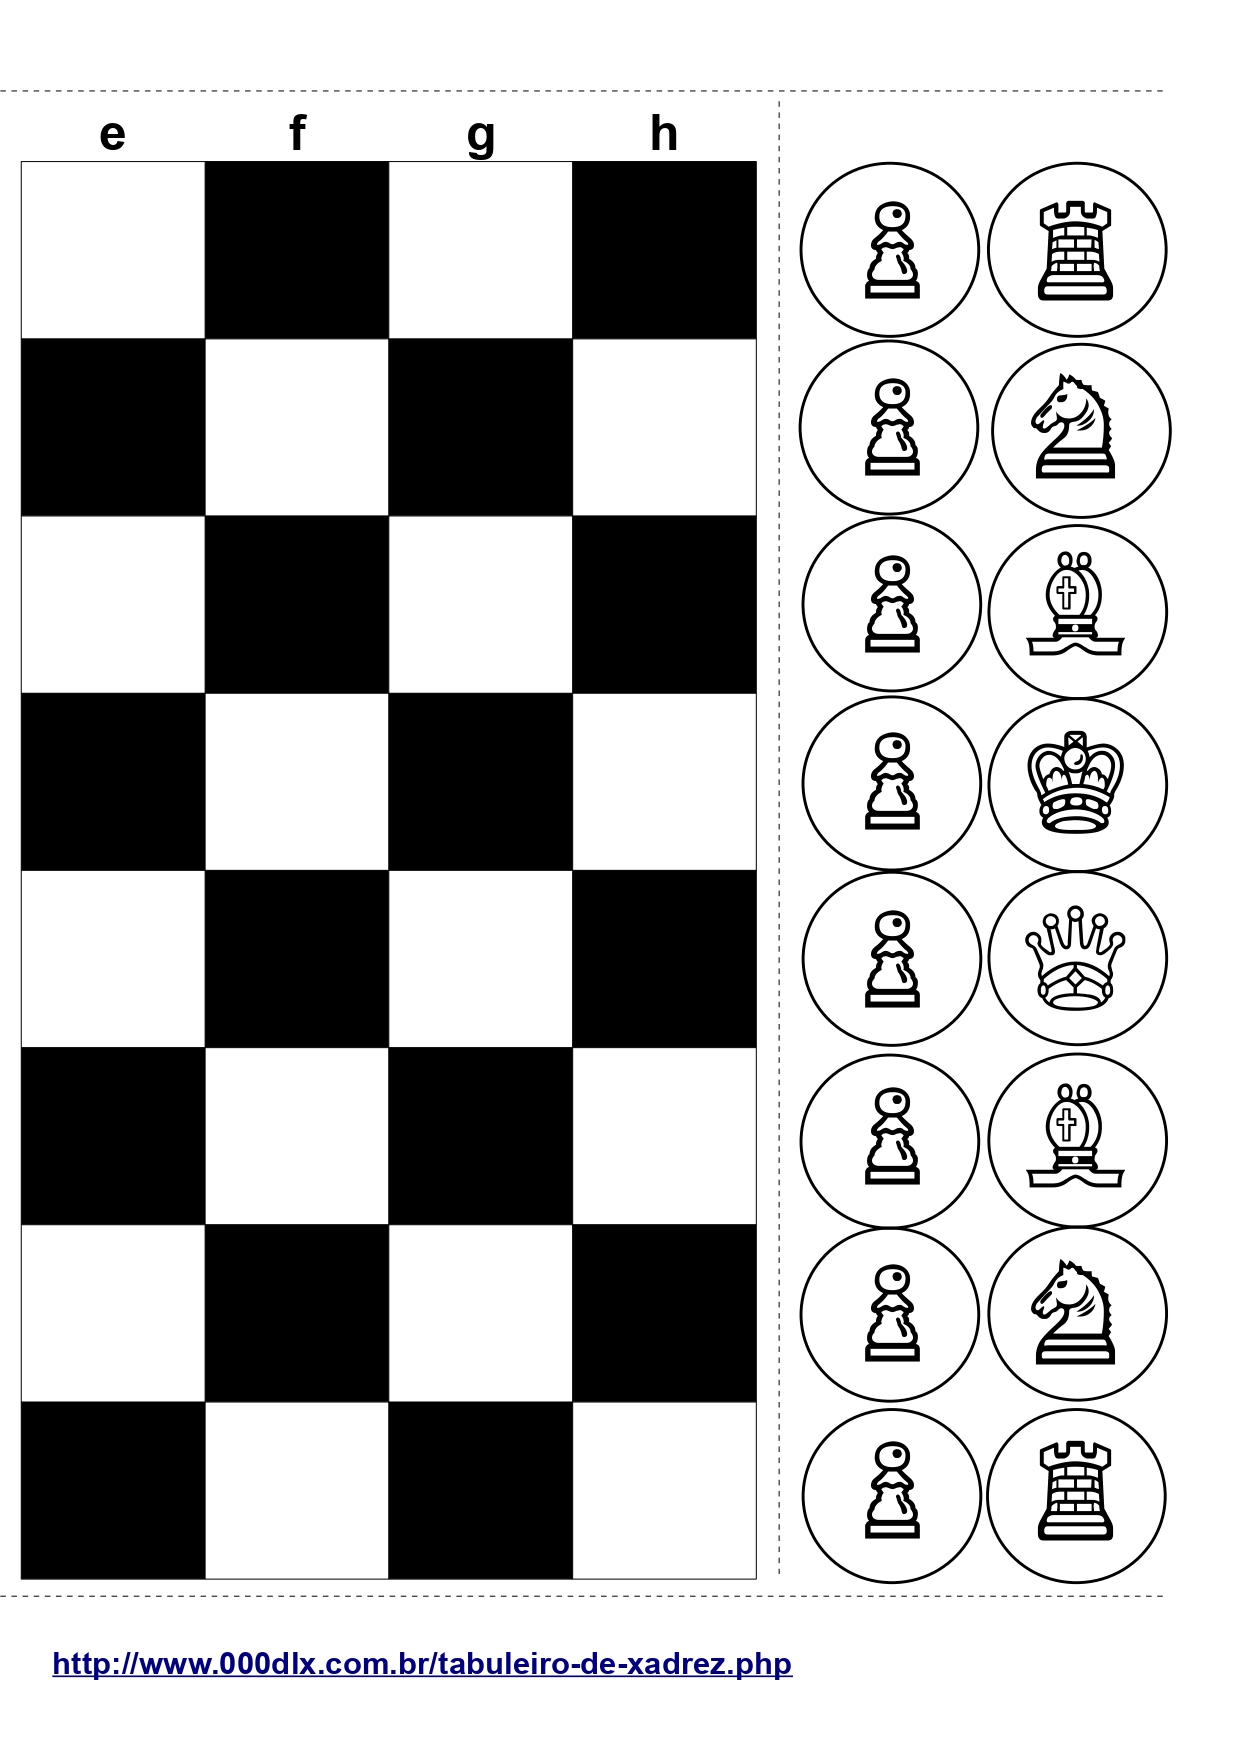 Xadrez é arte - Peças de Xadrez para imprimir, recortar e